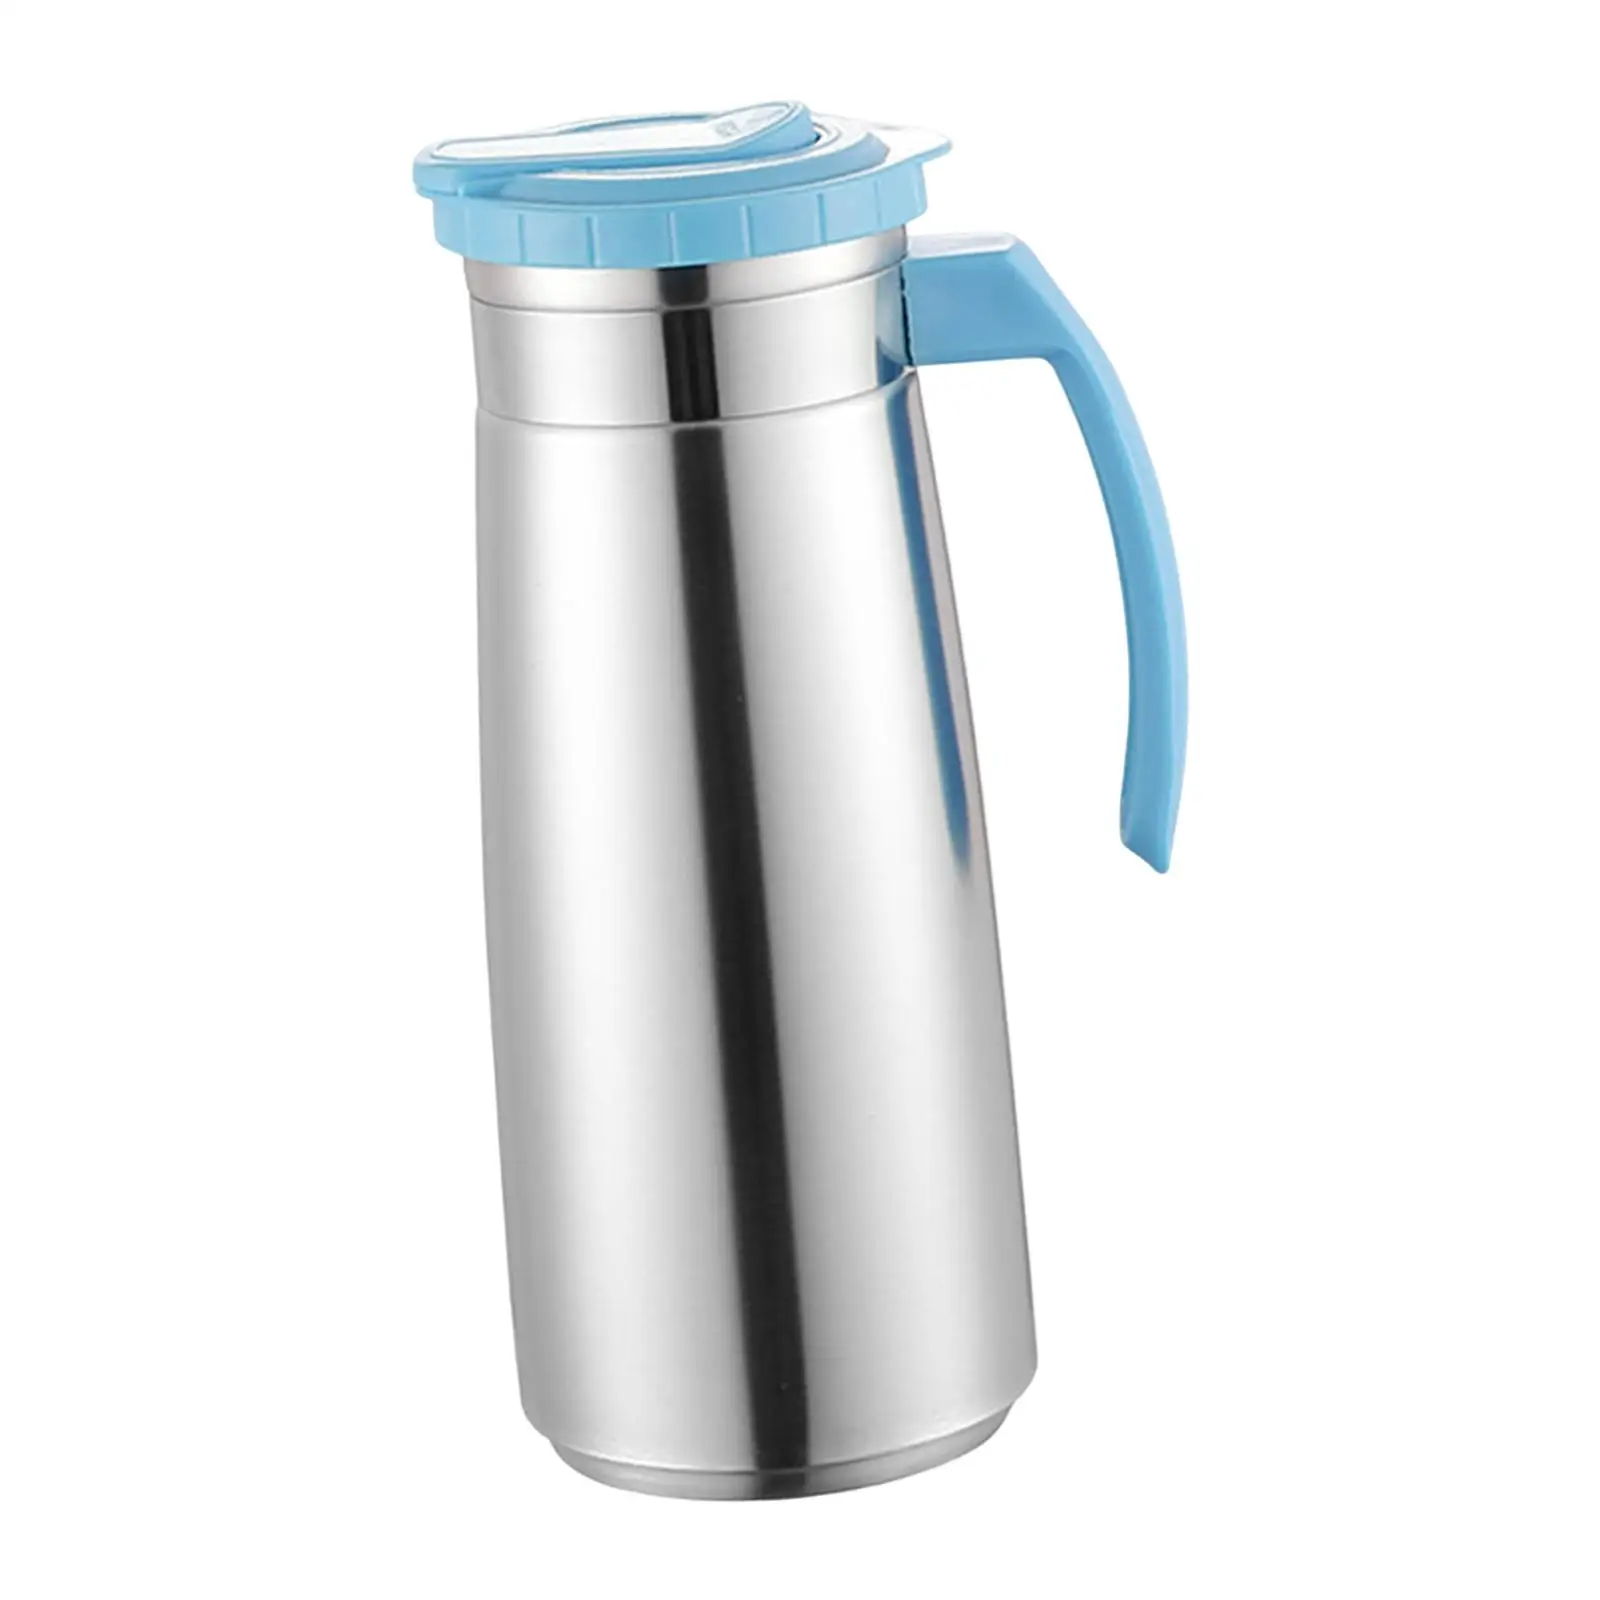 Water Pitcher Tea Kettle Drinks Water Jug Drinkware Sealed Lid 1.3L Cold Water Kettle for Milk Lemonade Beverage Juice Drink